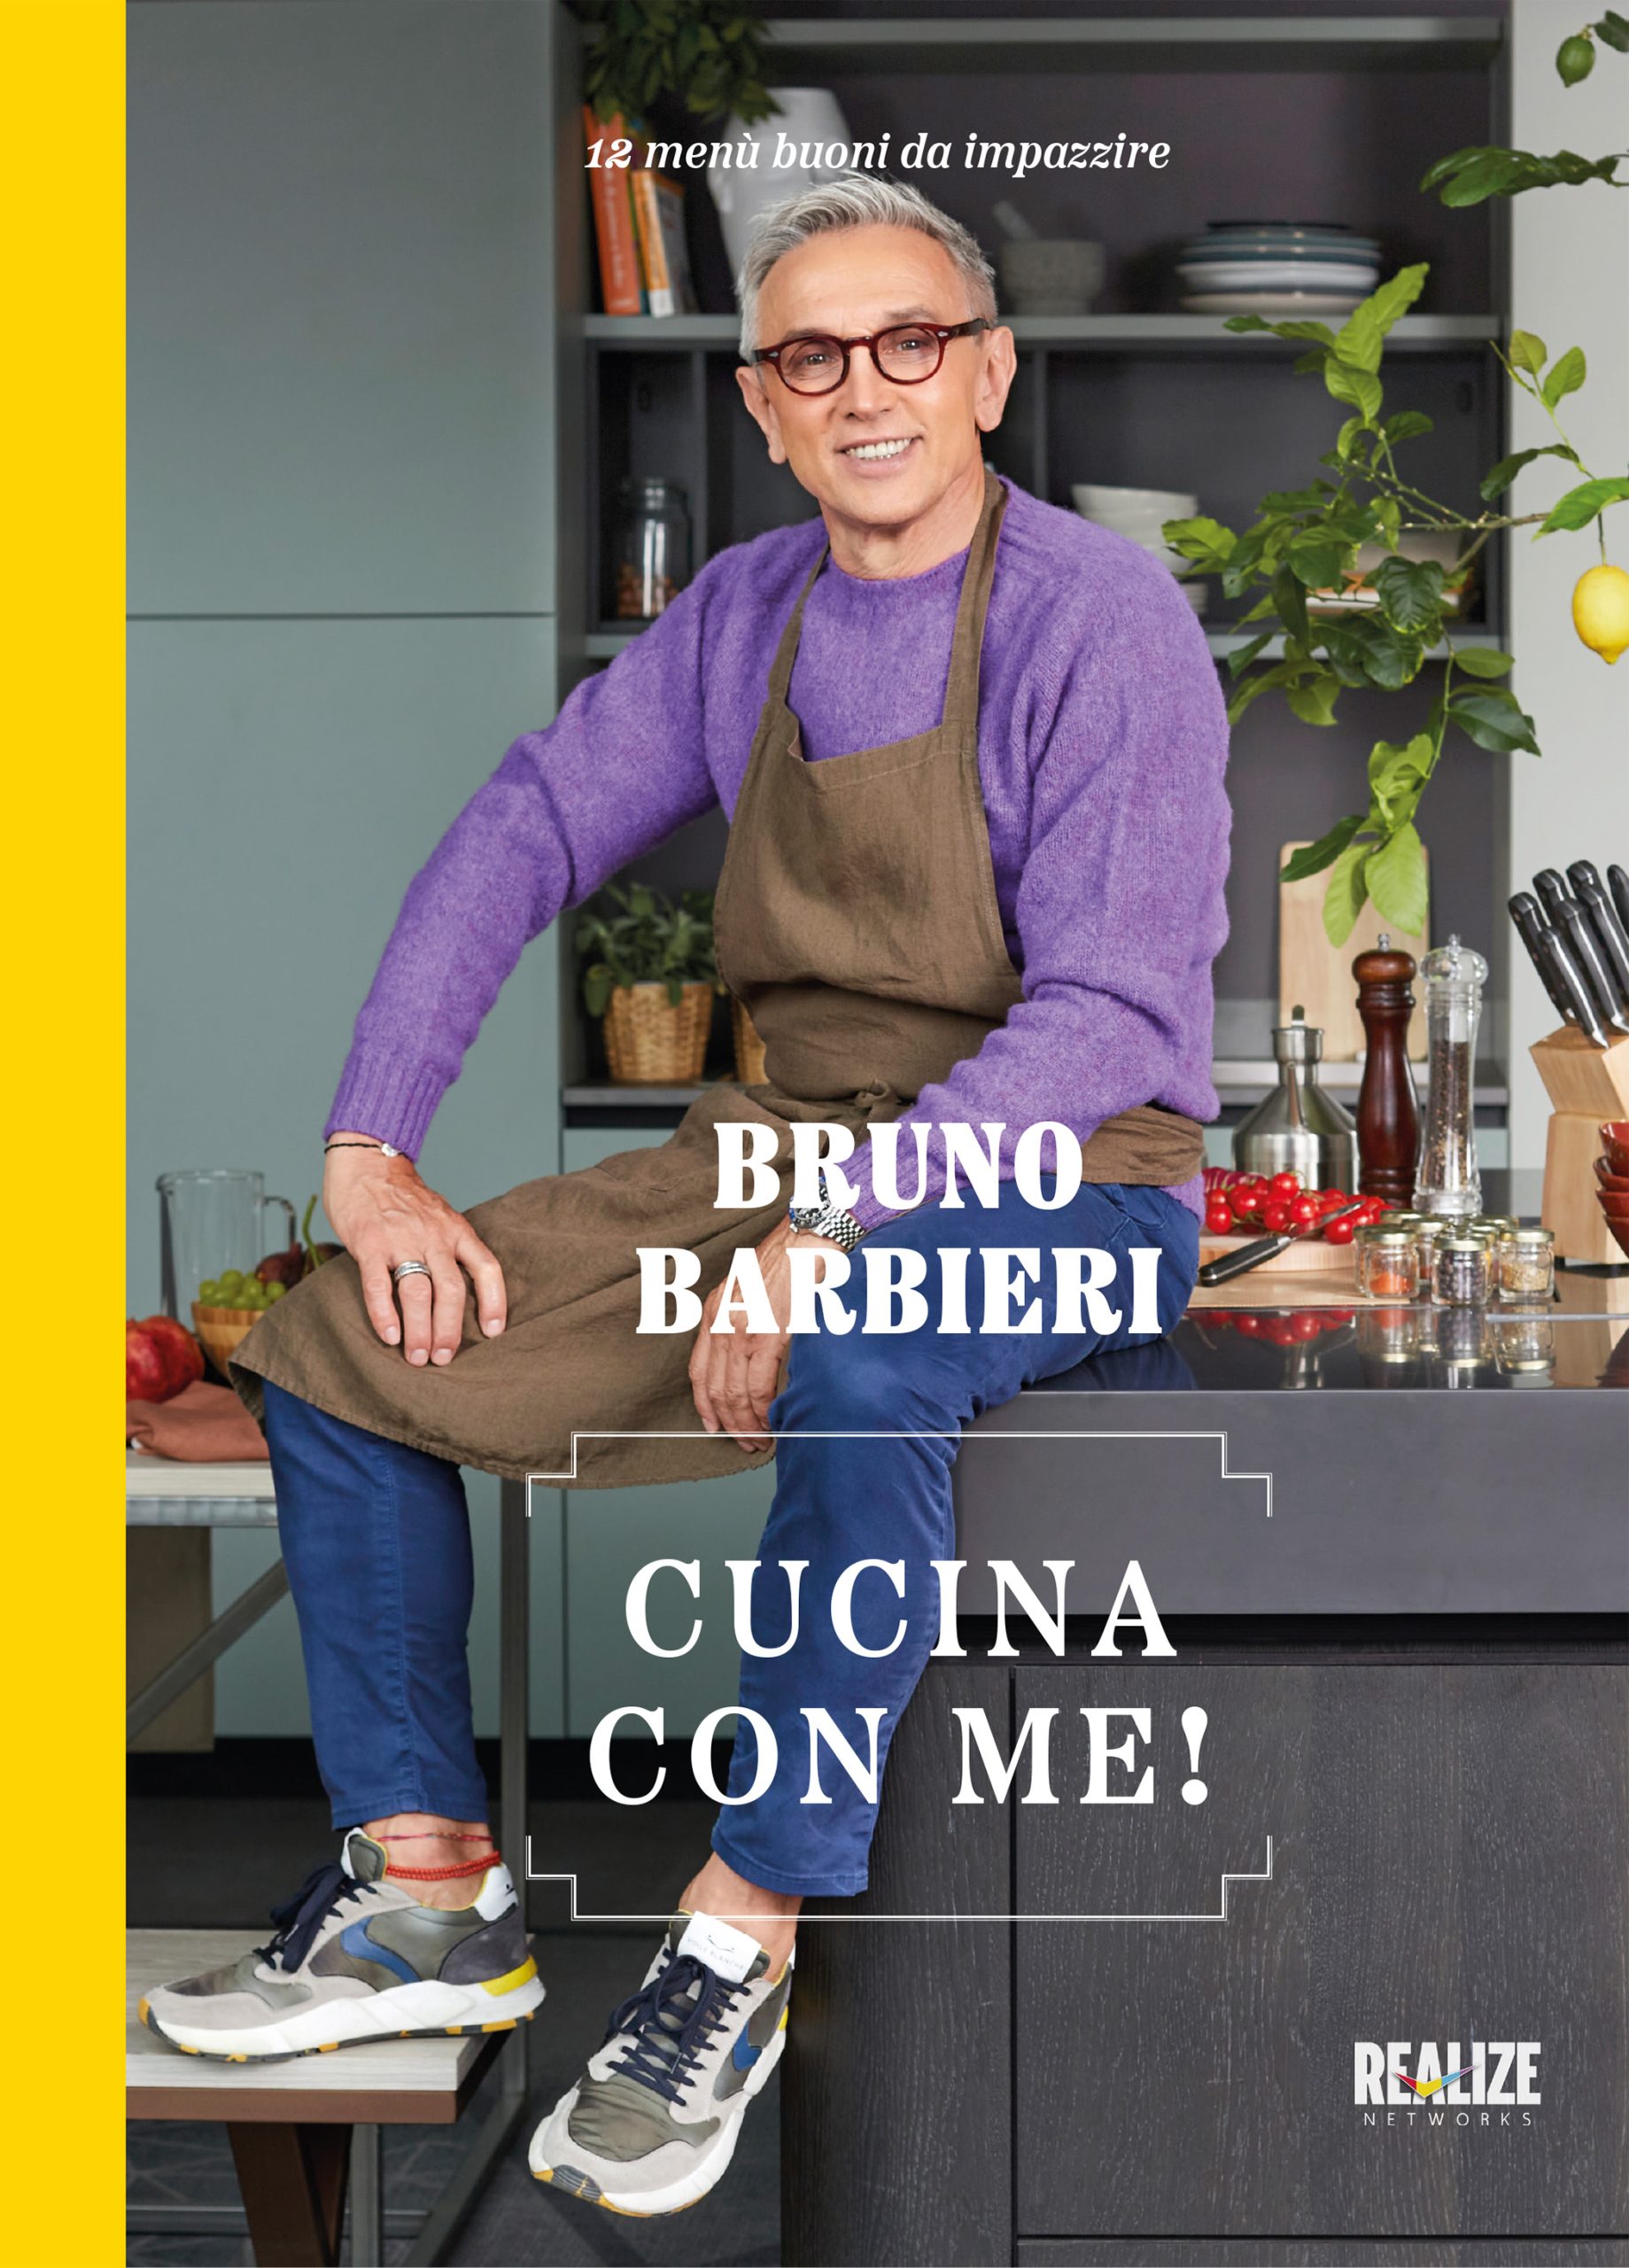 “Cucina con me”, il nuovo libro di Bruno Barbieri con prefazione di Giuliano Sangiorgi